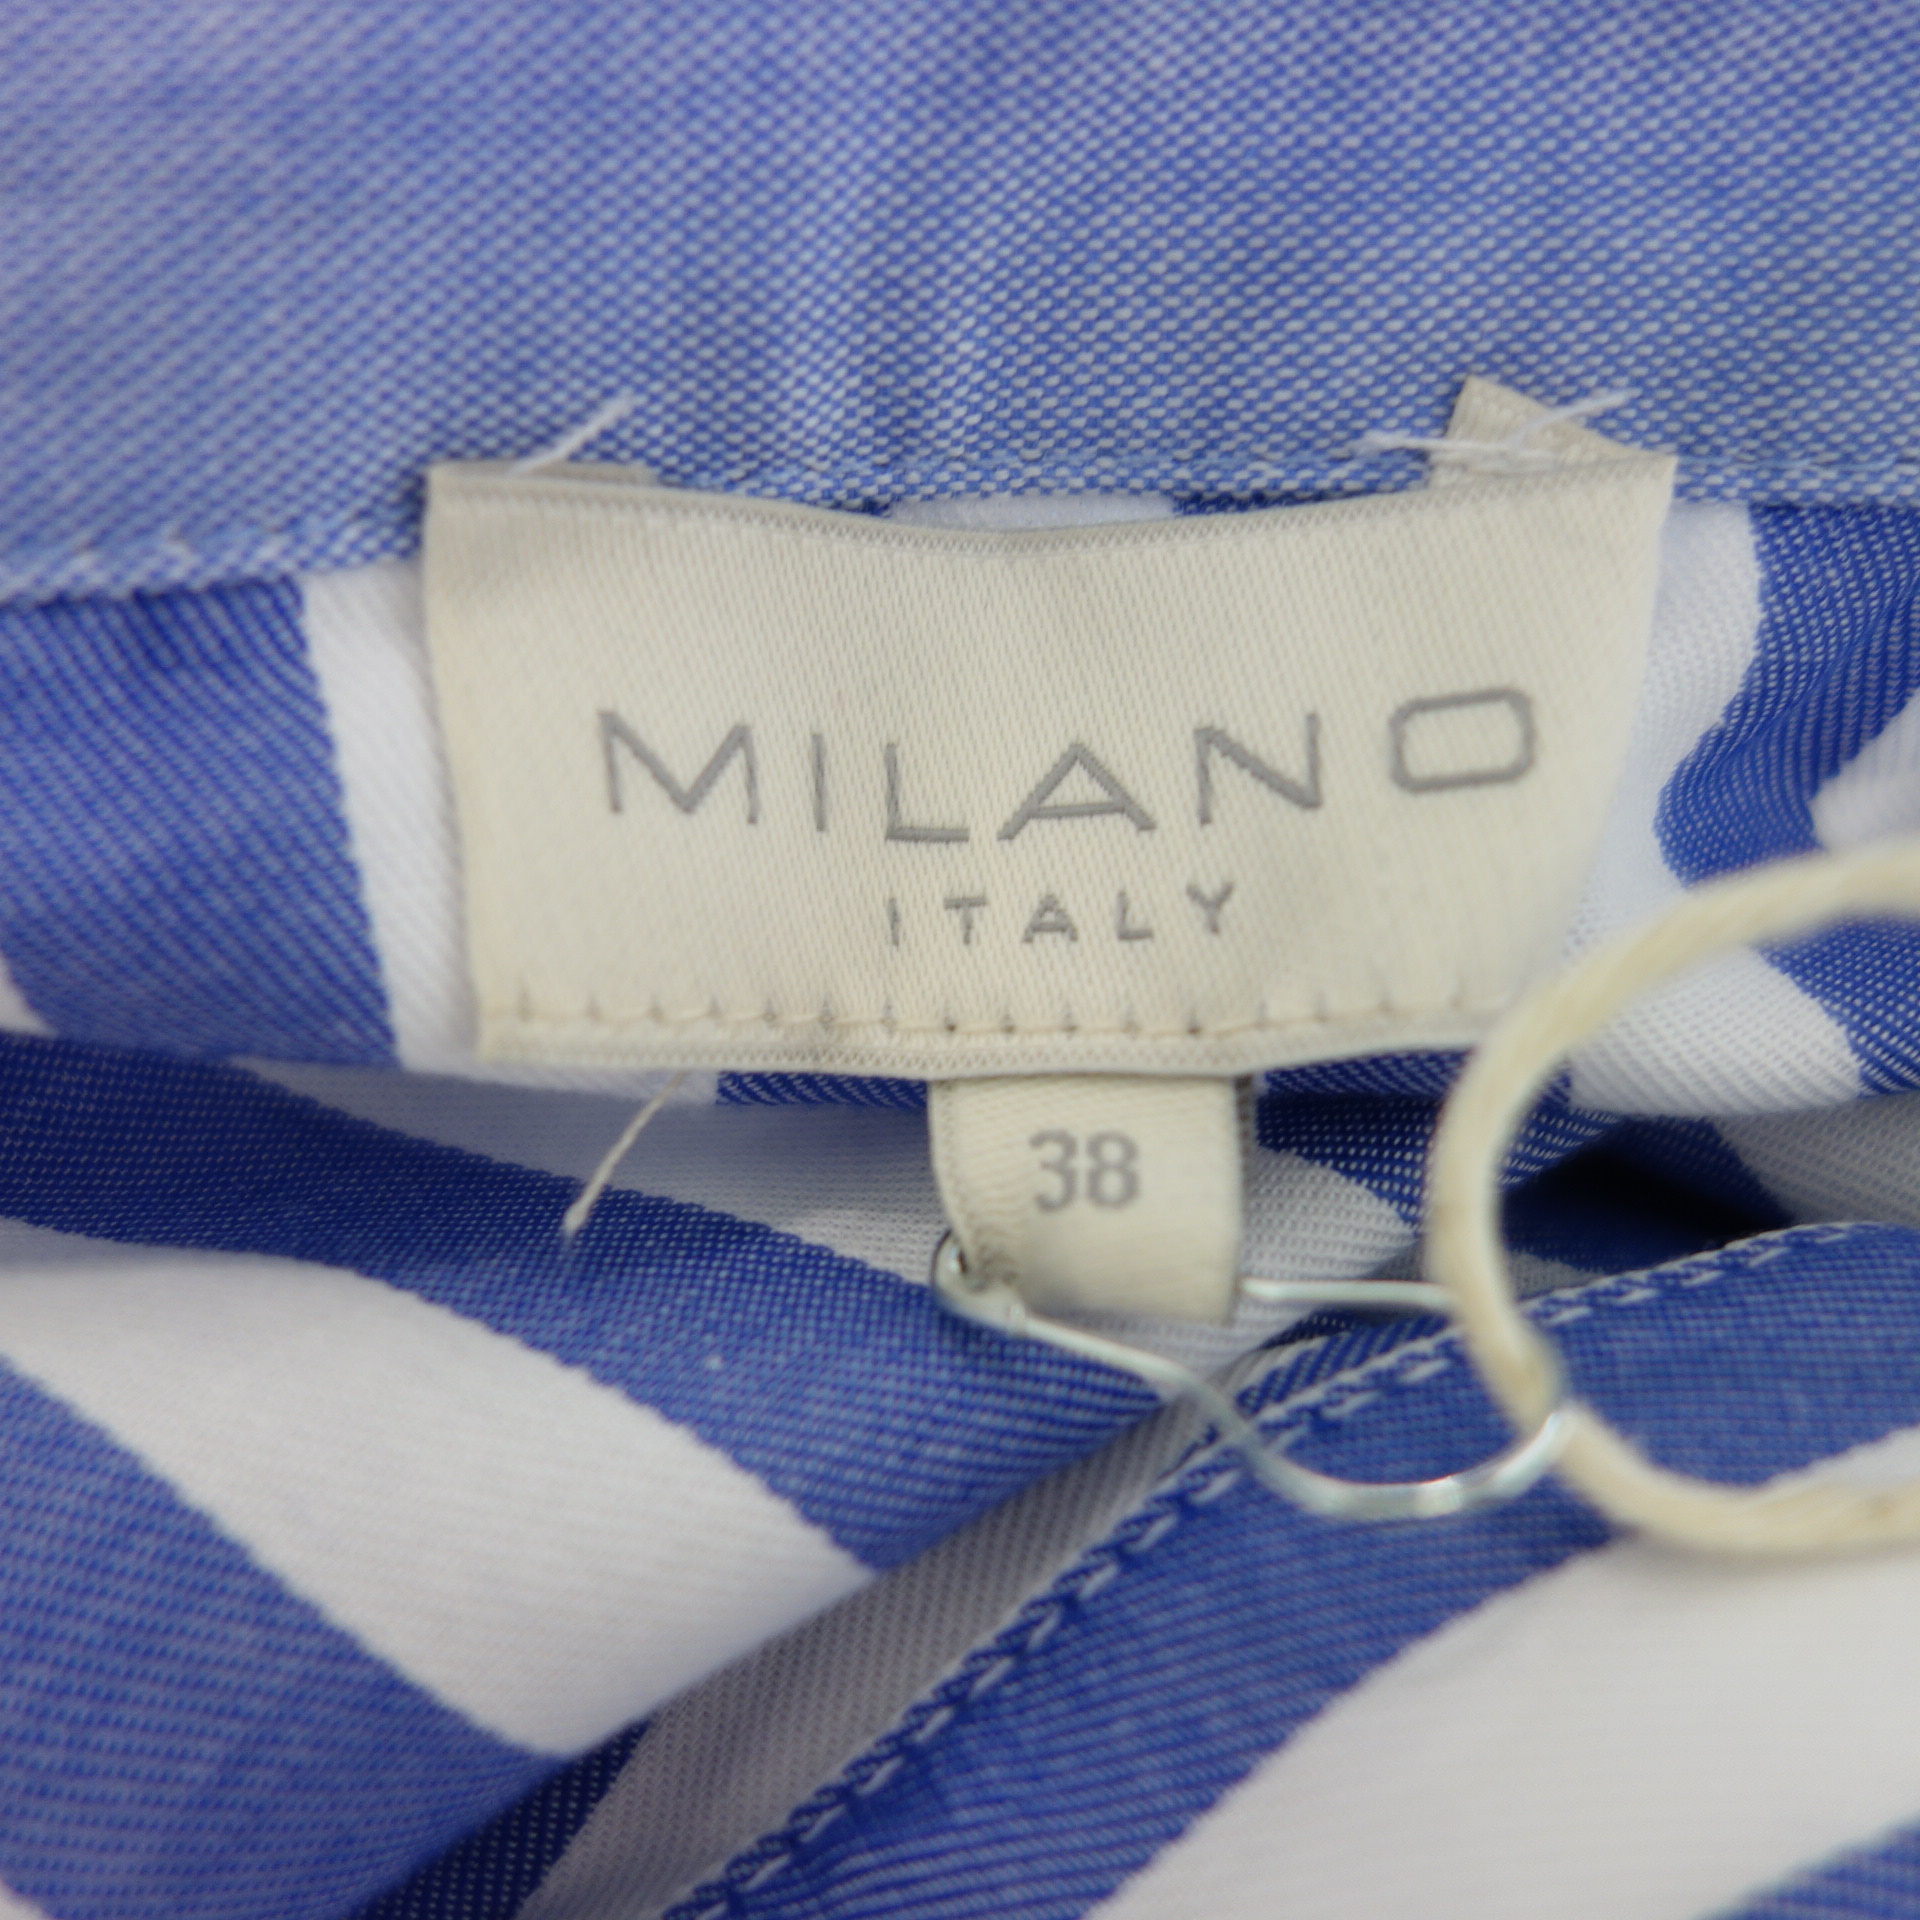 MILANO Italy Damen Kleid Blau Weiß Gestreift 100% Baumwolle 